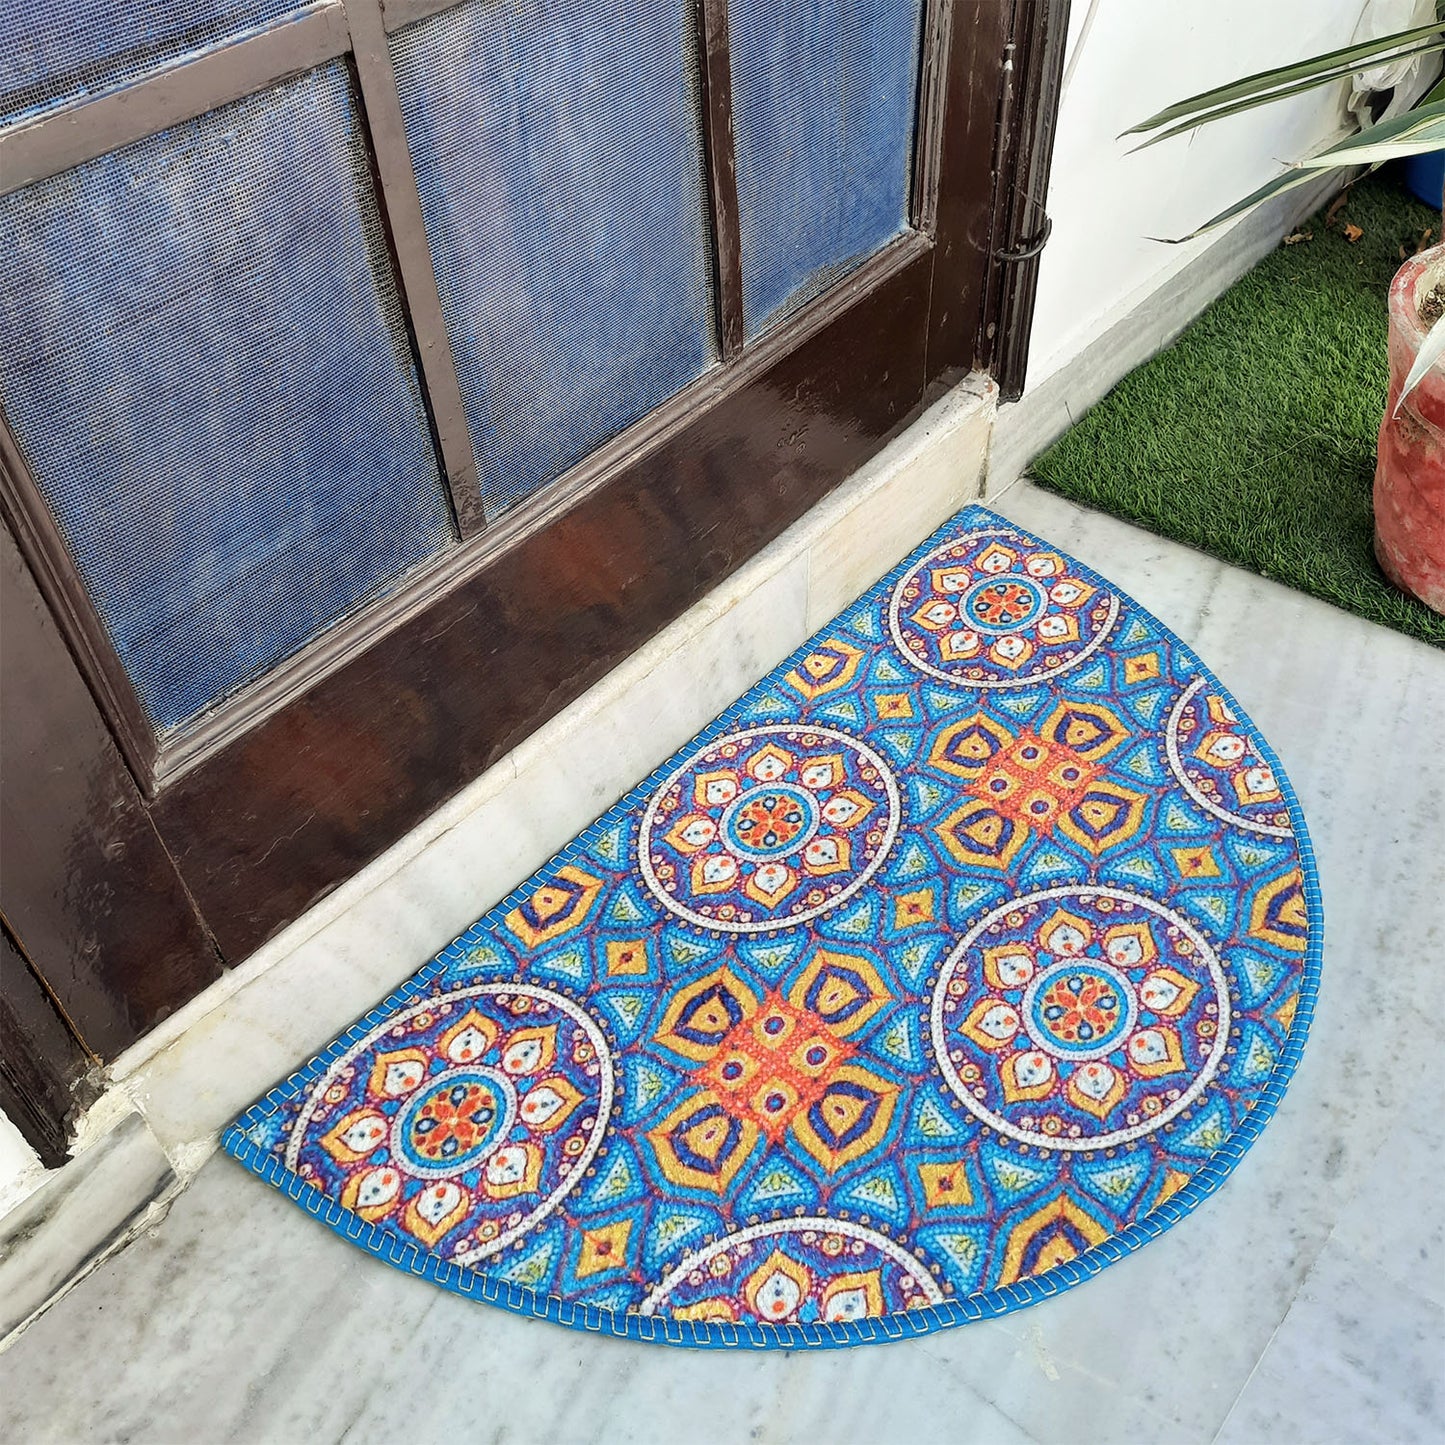 Avioni Home Floor Mats in Beautiful Moroccan Design | Anti Slip, Durable & Washable | Outdoor & Indoor